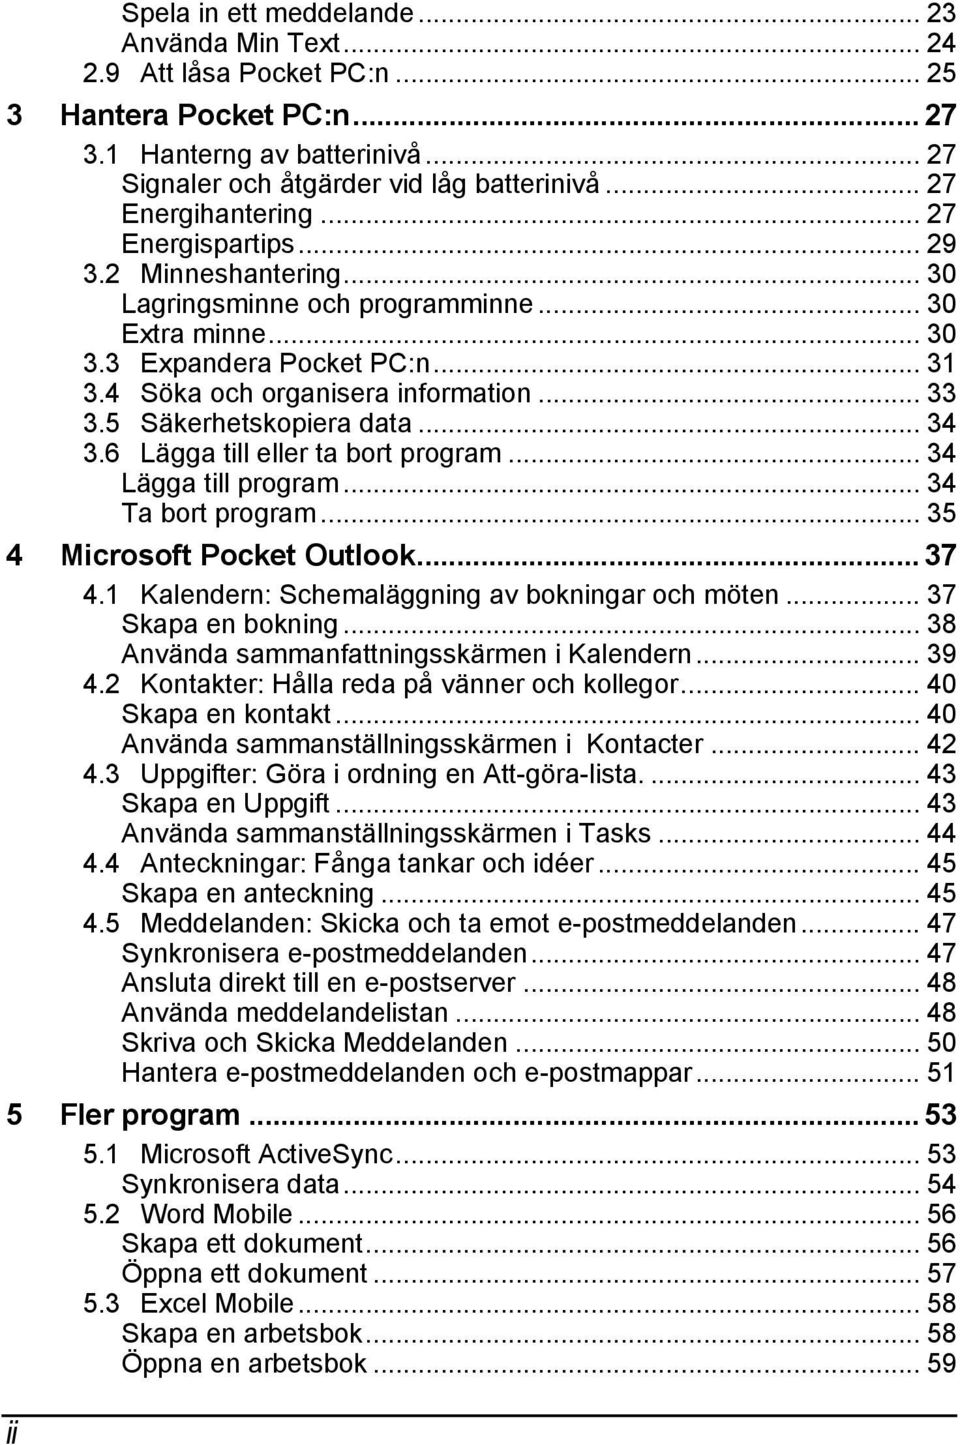 .. 33 3.5 Säkerhetskopiera data... 34 3.6 Lägga till eller ta bort program... 34 Lägga till program... 34 Ta bort program... 35 4 Microsoft Pocket Outlook... 37 4.